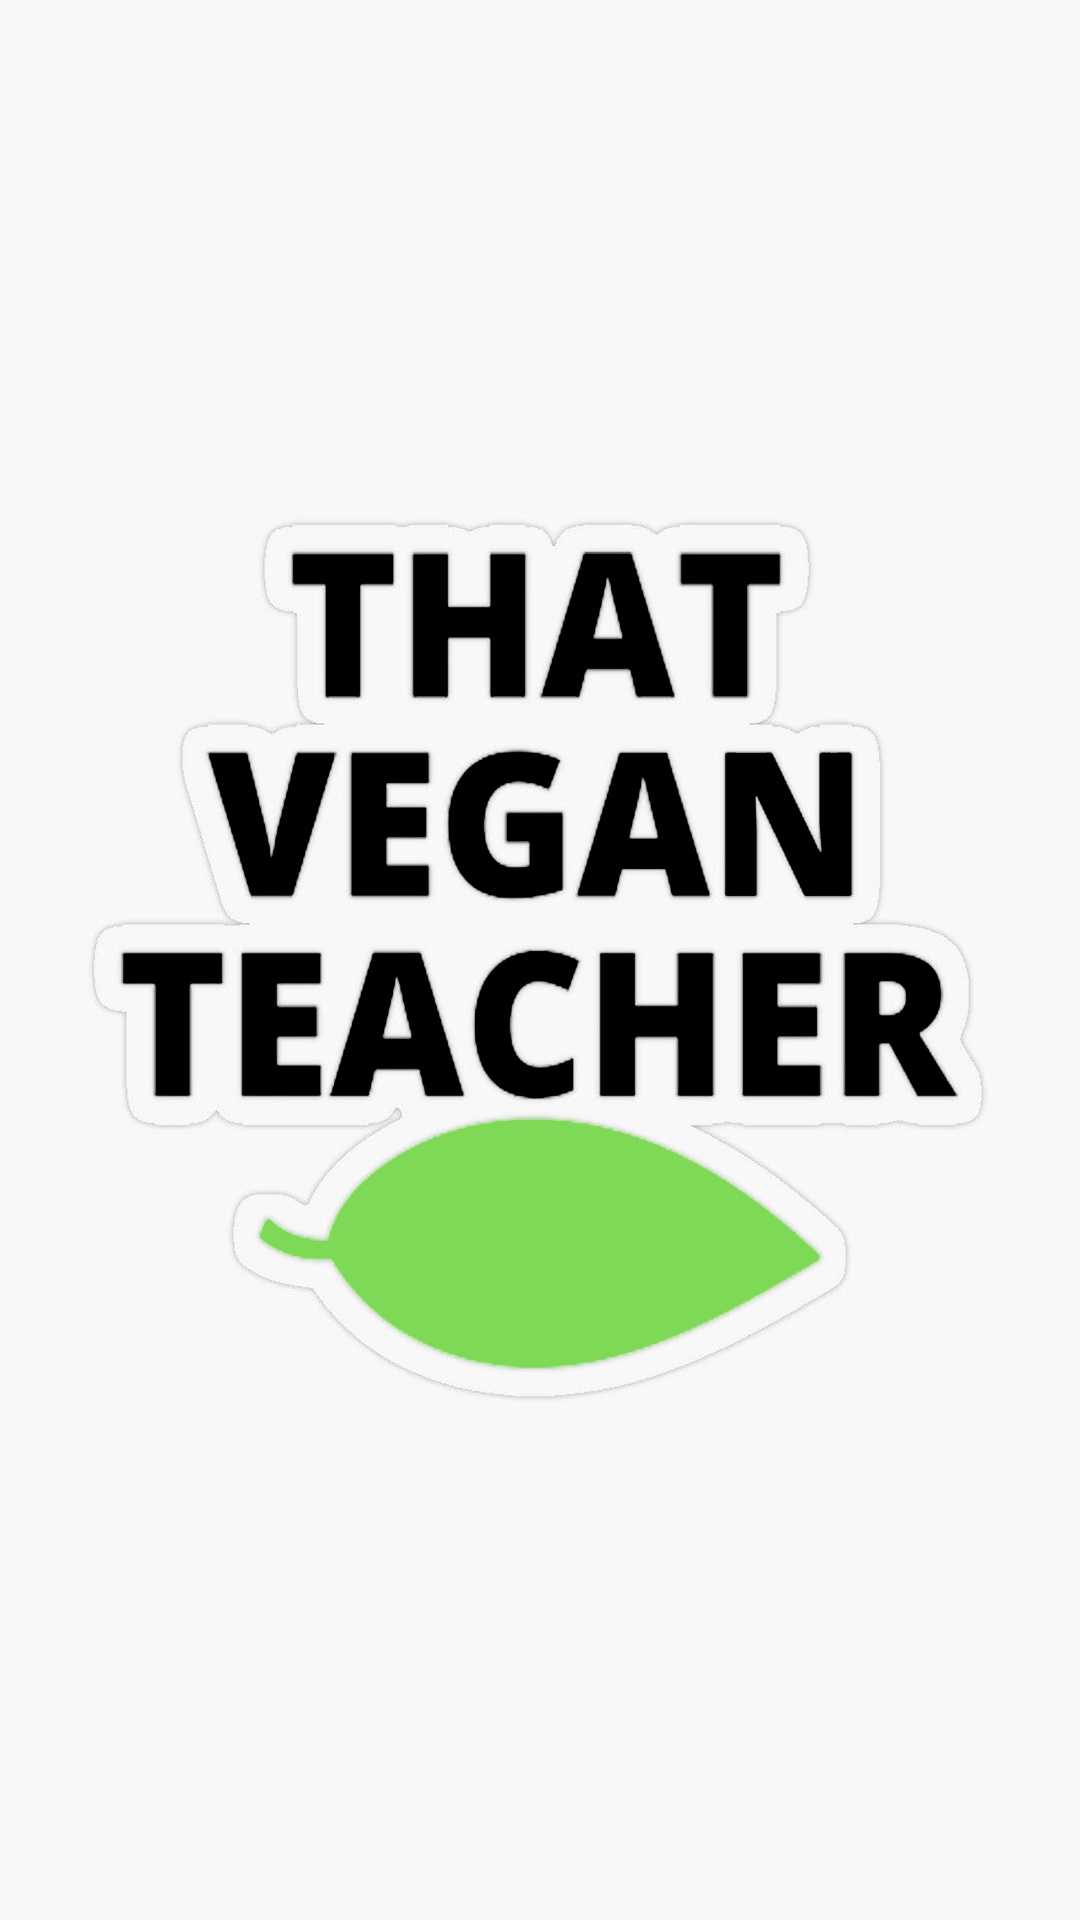 The vegan teacher song